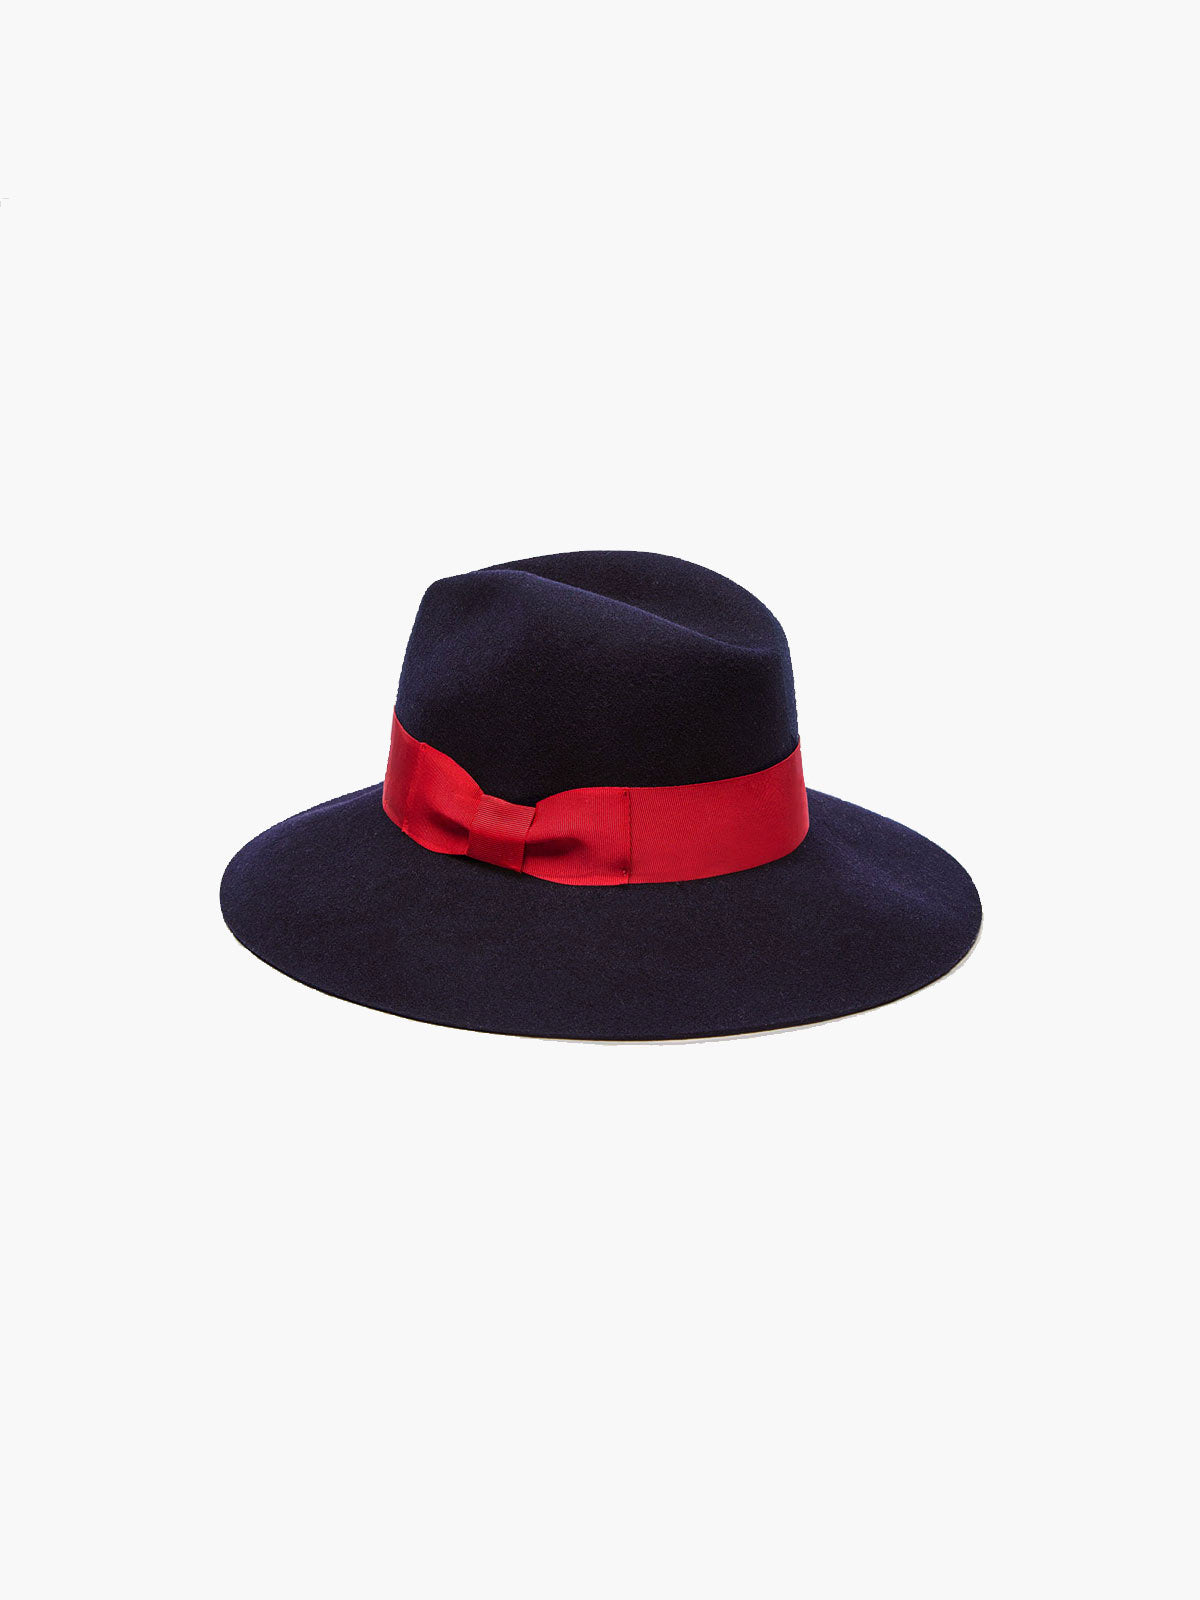 Felt Shade Hat | Navy Felt Shade Hat | Navy - Fashionkind